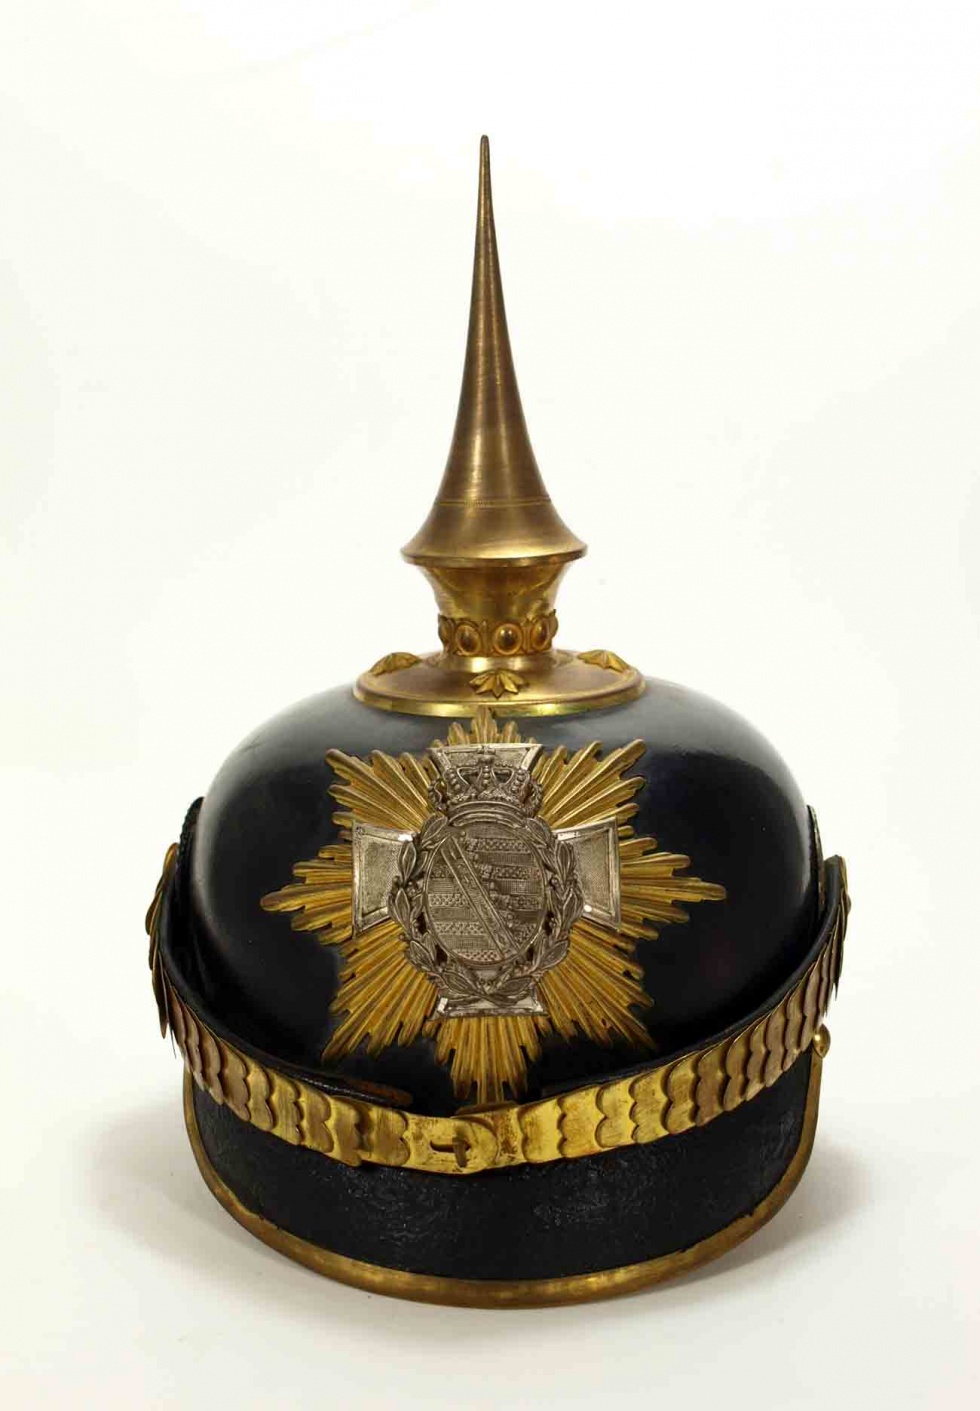 Helm für Landwehroffiziere (Pickelhaube), Sachsen, Ende 19. Jahrhundert (Museum Weißenfels - Schloss Neu-Augustusburg CC BY-NC-SA)